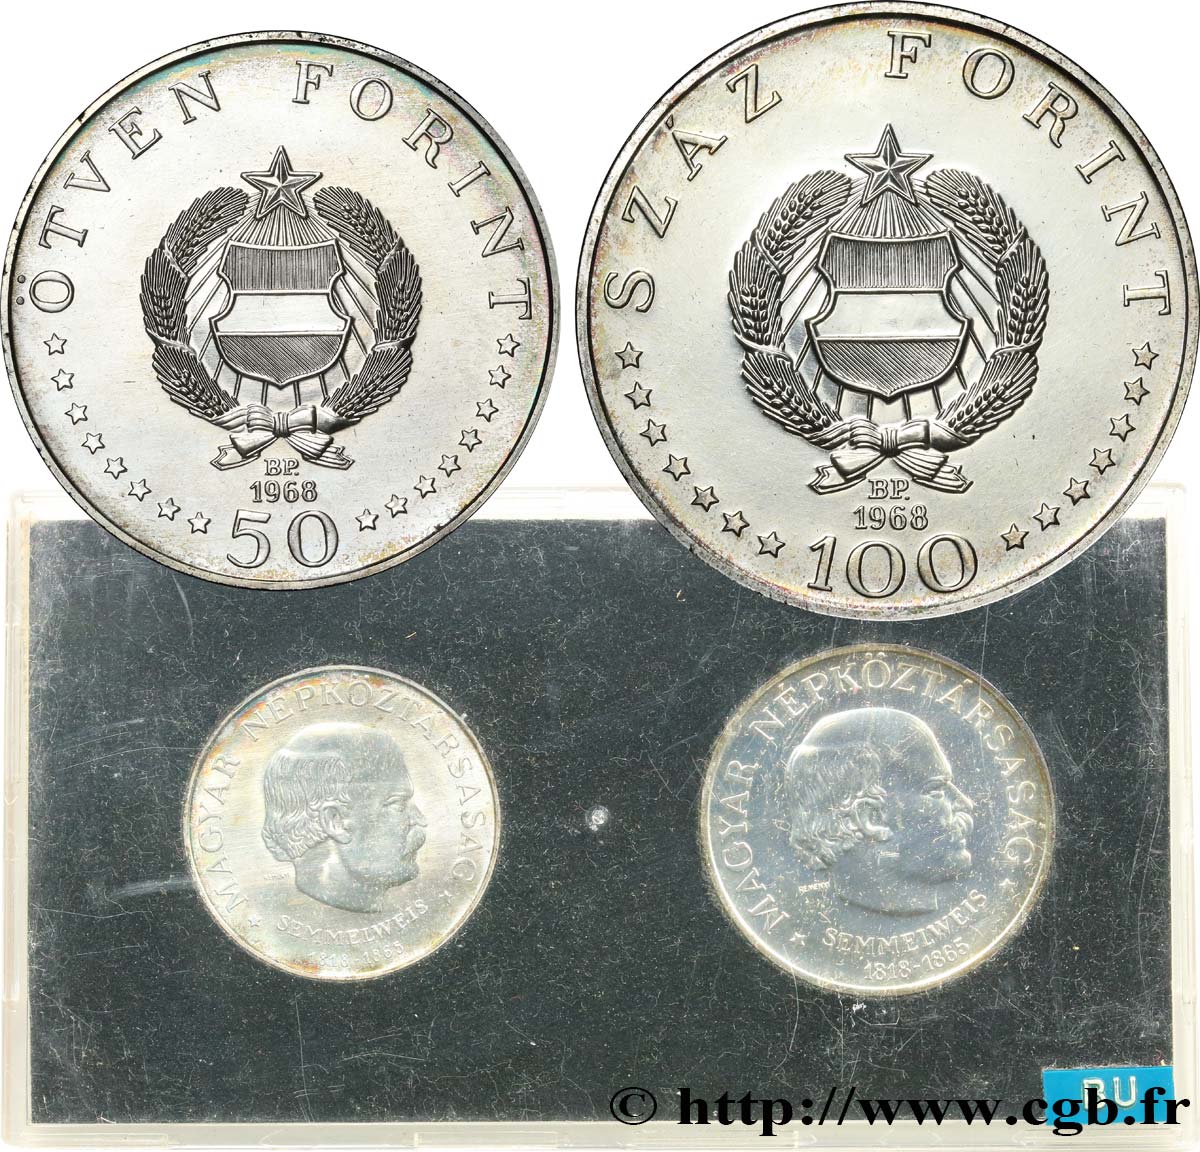 HUNGRíA Série FDC - 2 monnaies - Ignác Semmelweis 1968 Budapest FDC 